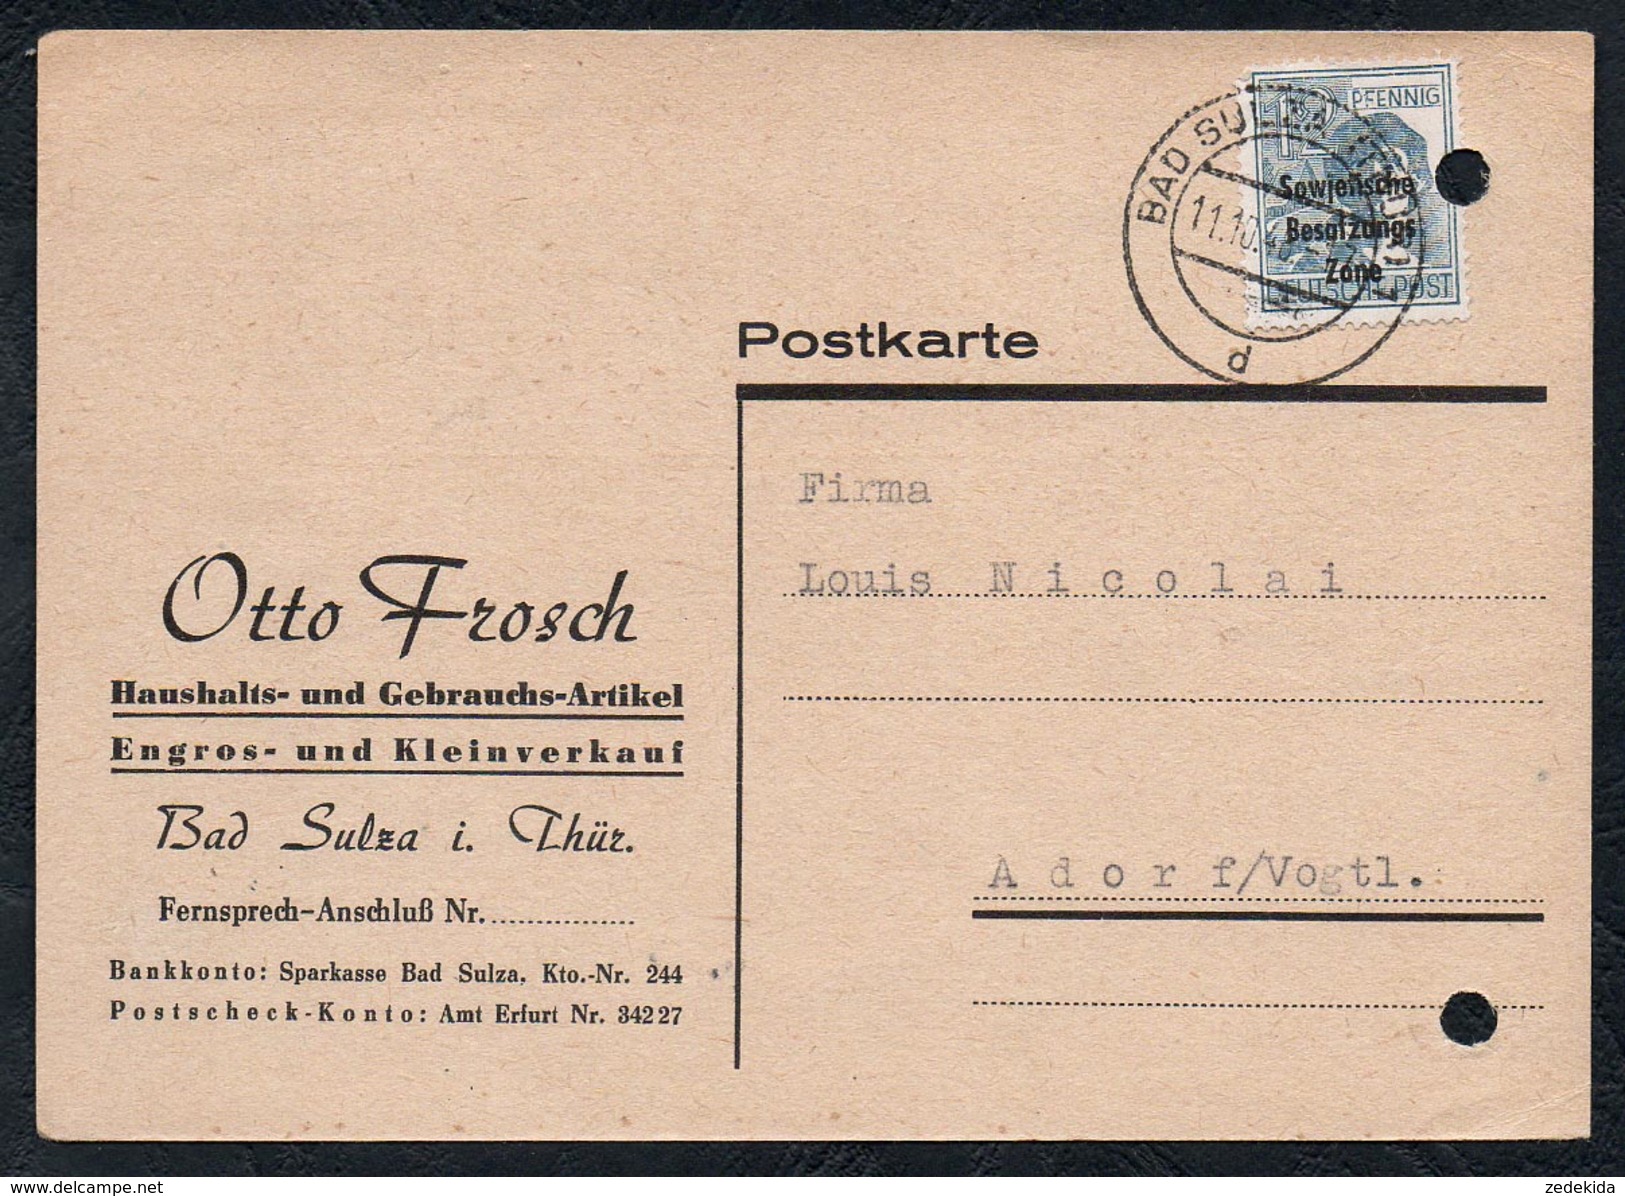 A6245 - Alte Postkarte - Bedarfspost - Bad Sulza - Otto Frosch Hasuhalt Und Gebrauchtwaren Nach Adorf 1948 SBZ - Bad Sulza